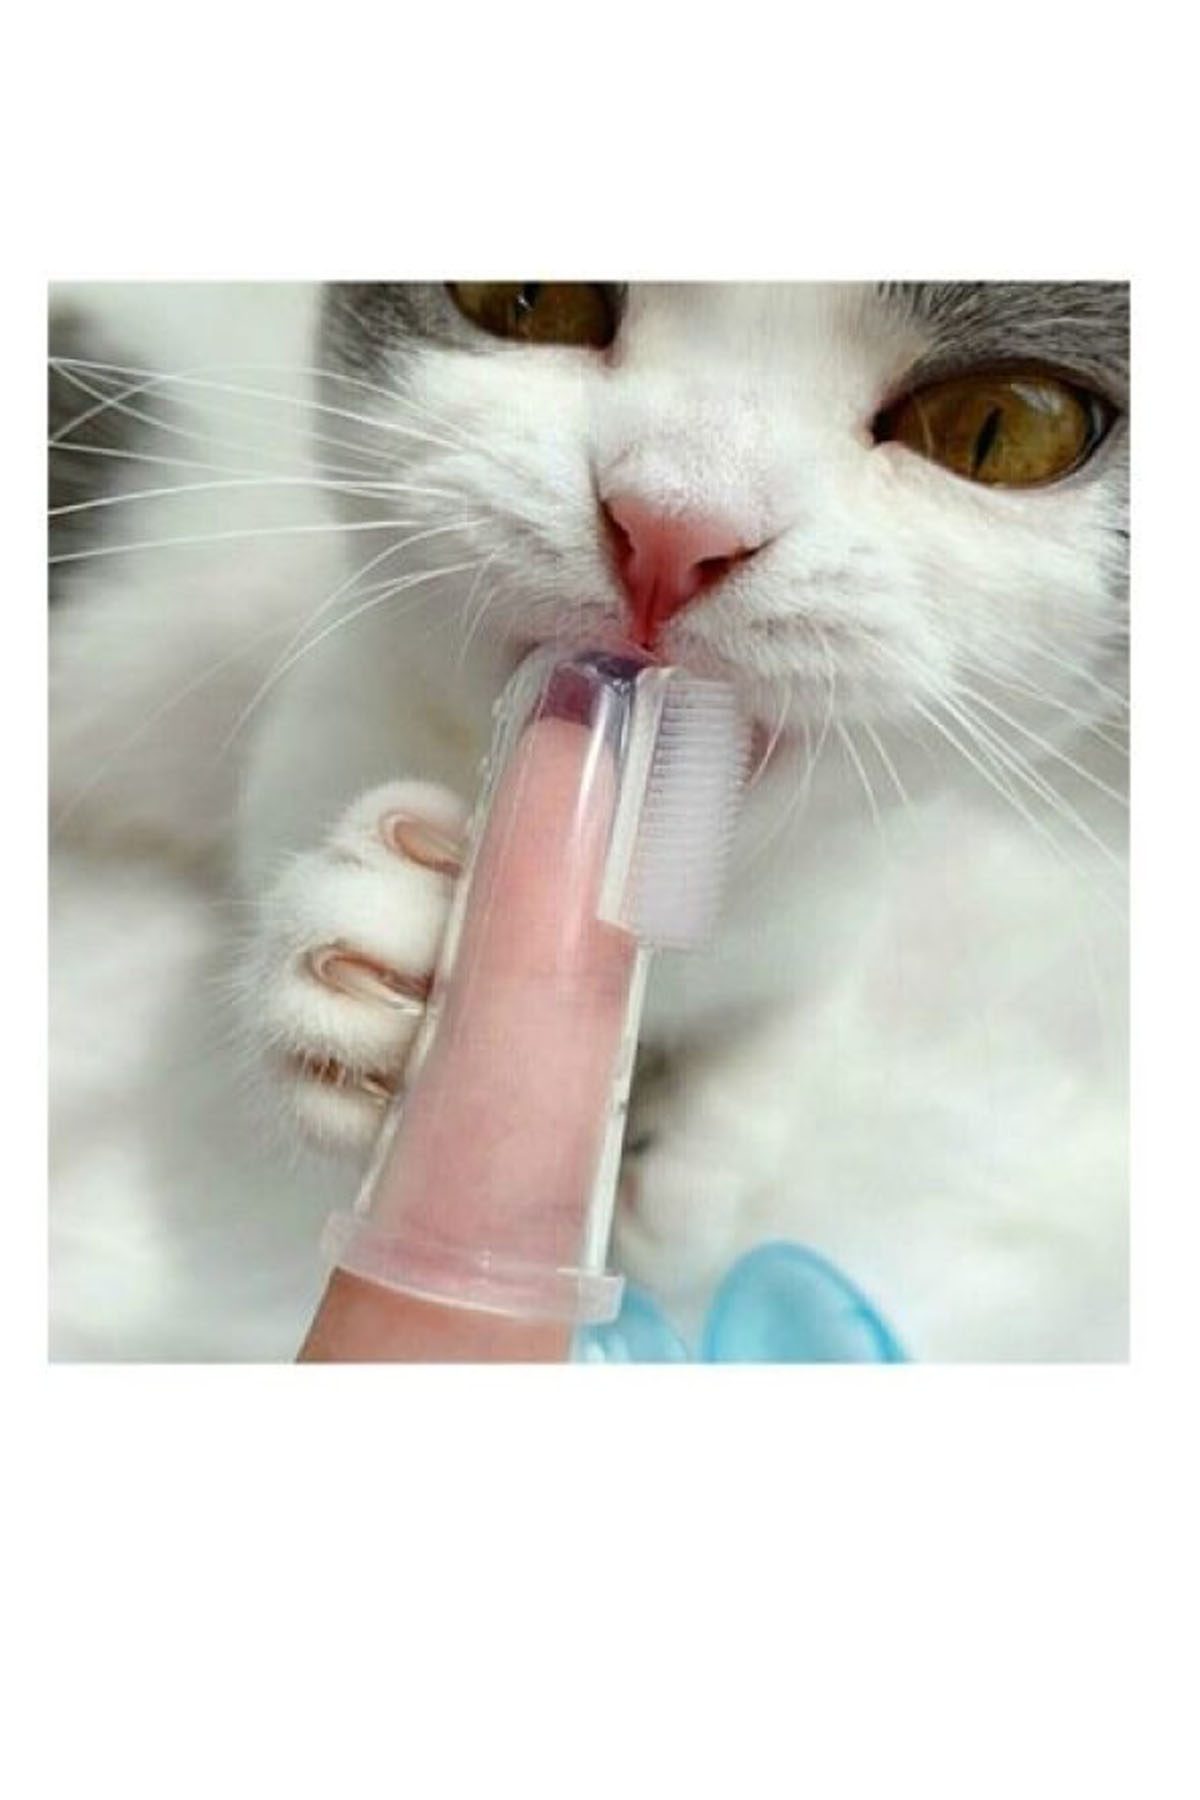 CLZ192 Kedi Köpek Diş Temizleme Fırçası